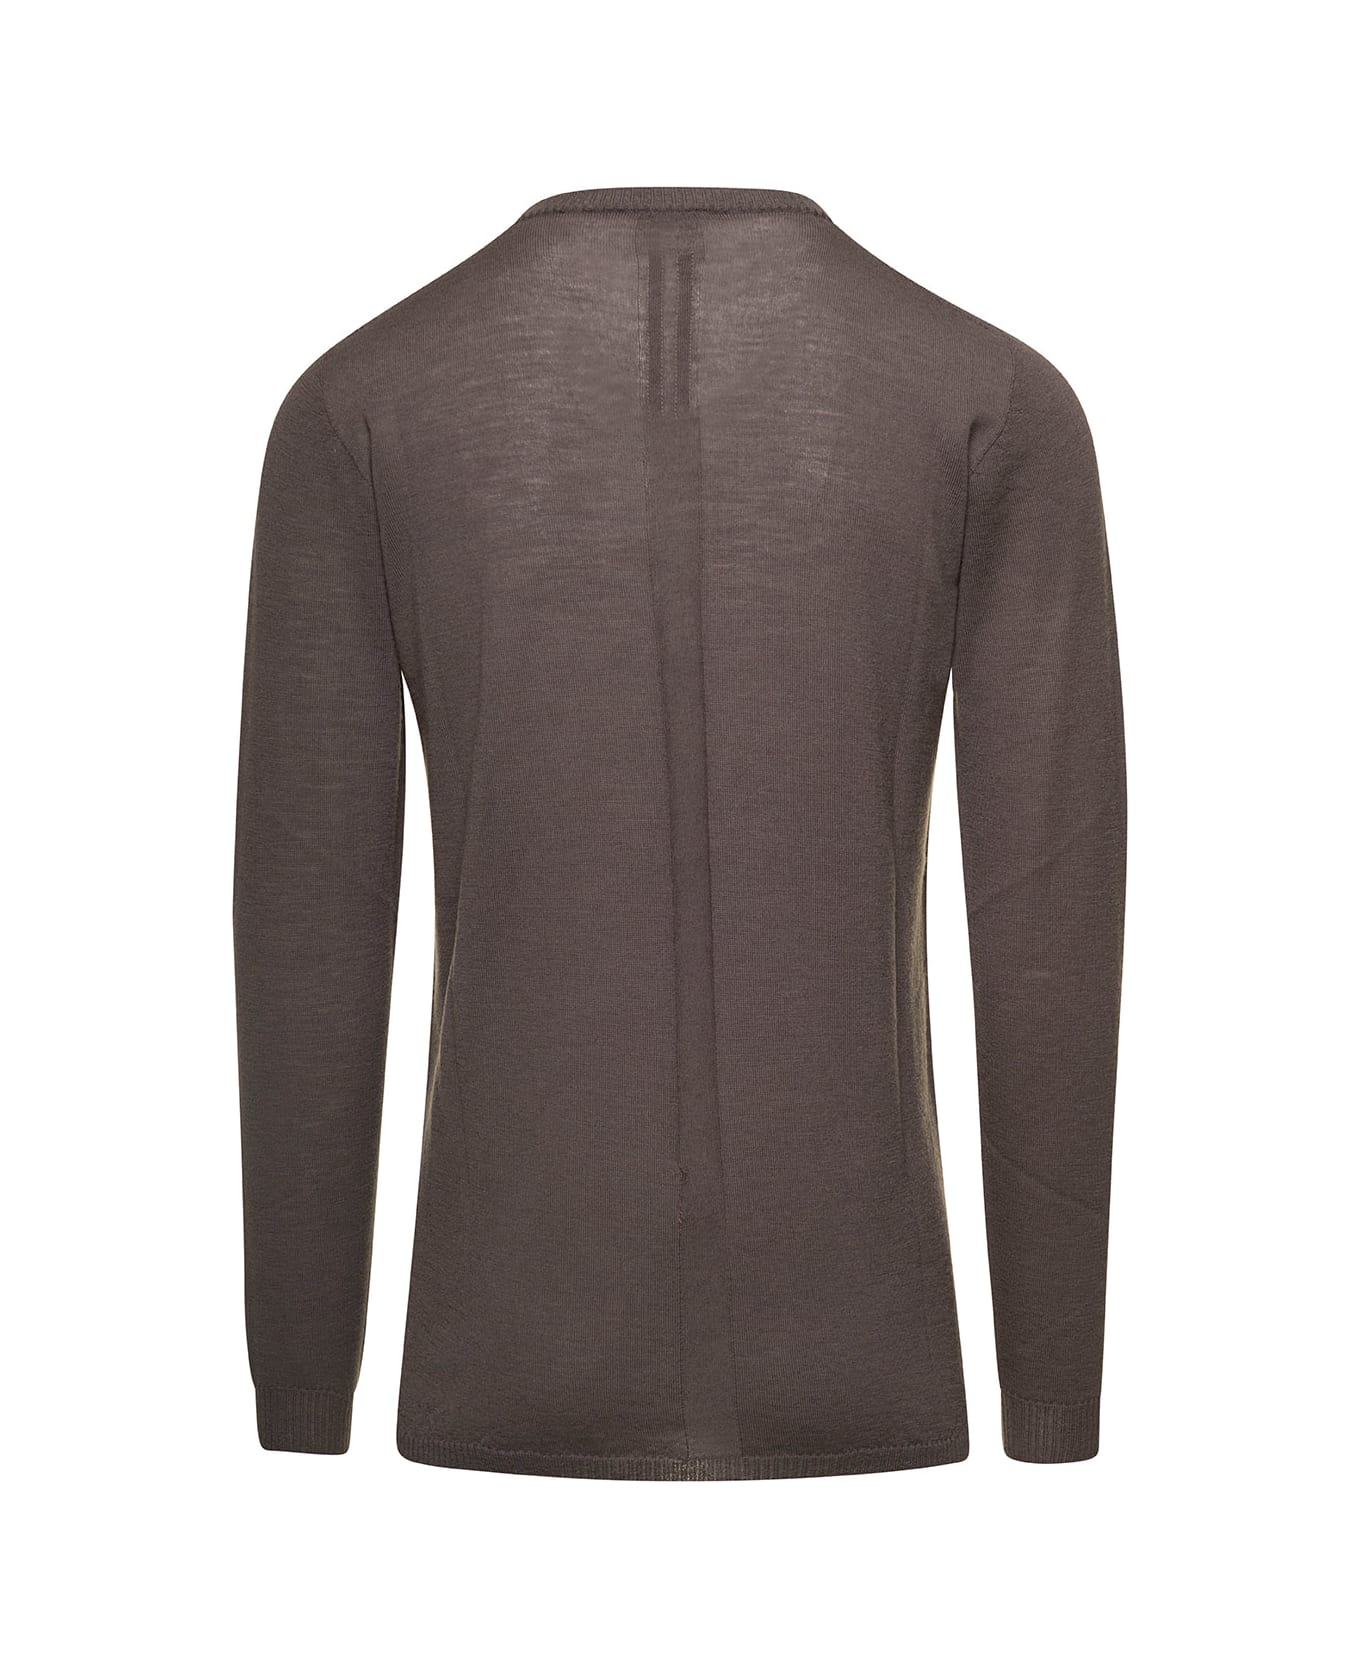 Rick Owens Beige Biker T-shirt With Long Sleeves In Wool Man - Beige